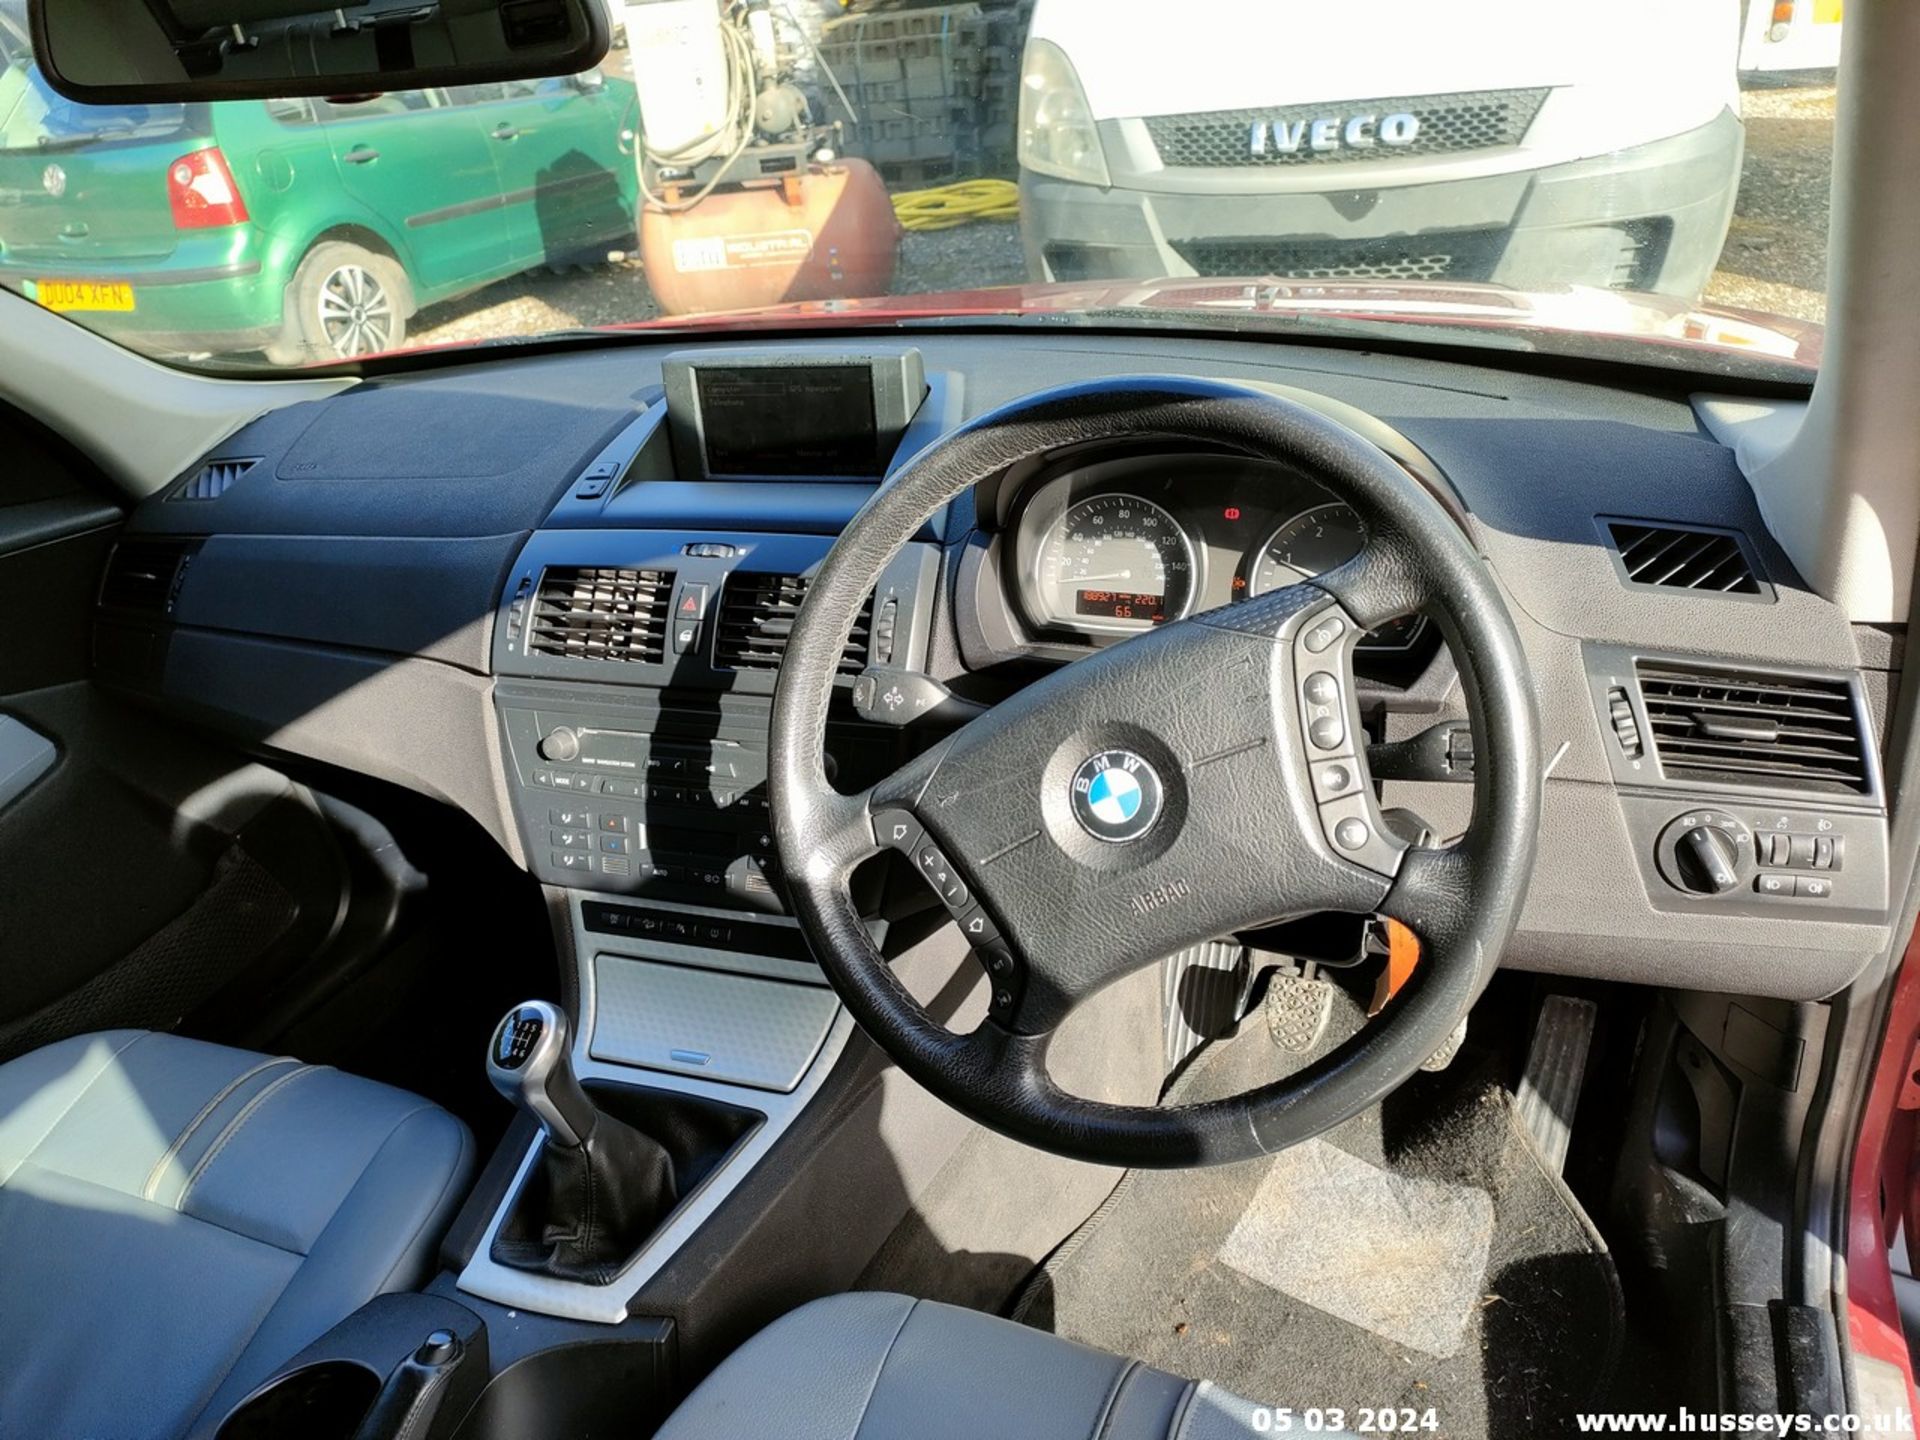 05/55 BMW X3 D SE - 1995cc 5dr Estate (Red, 188k) - Image 34 of 51